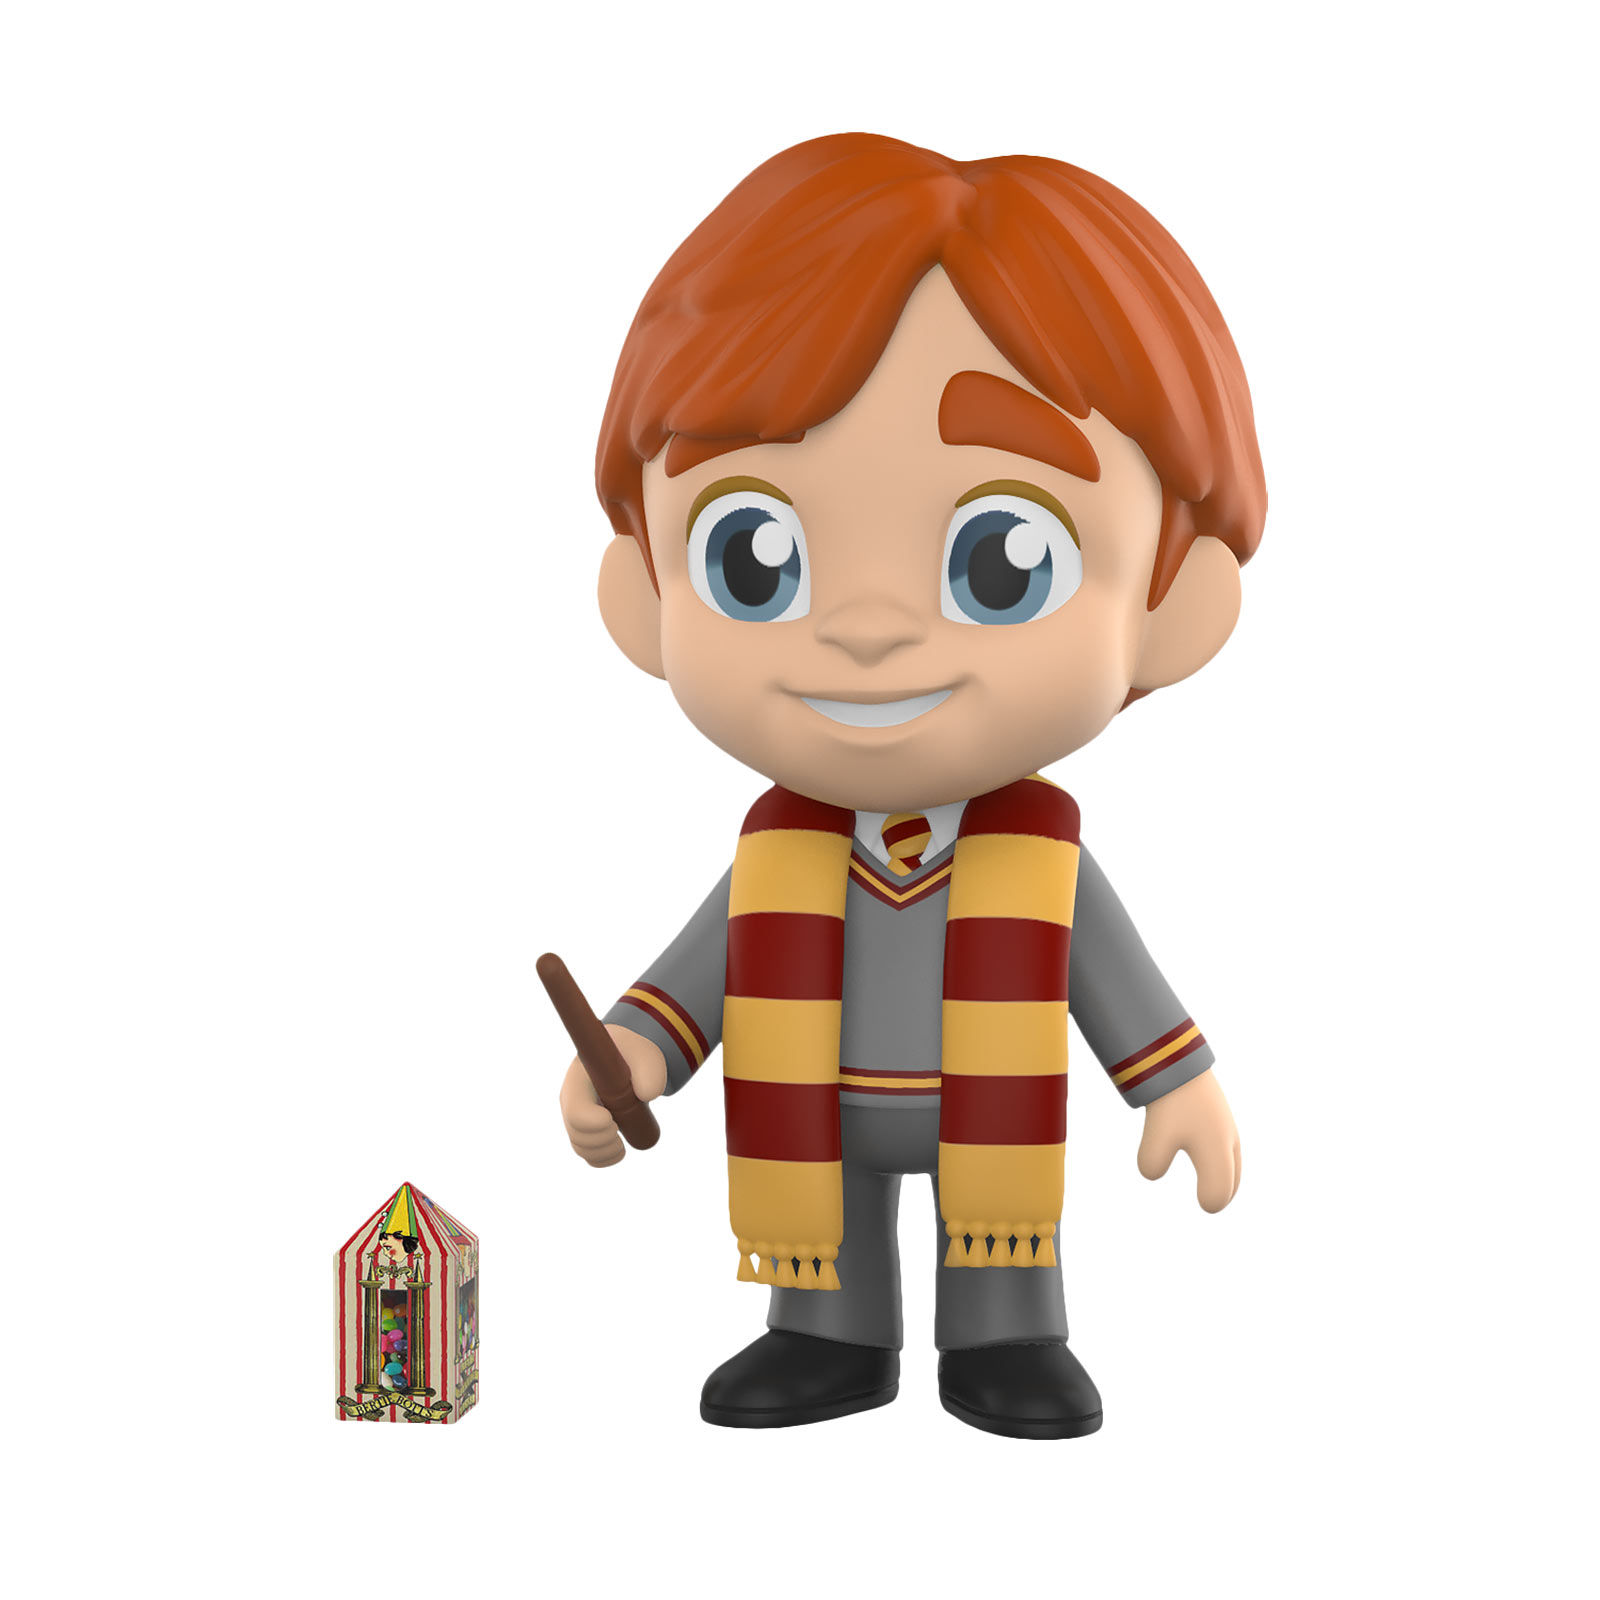 Harry Potter - Ron Weasley Gryffindor Funko Five Star Figurine